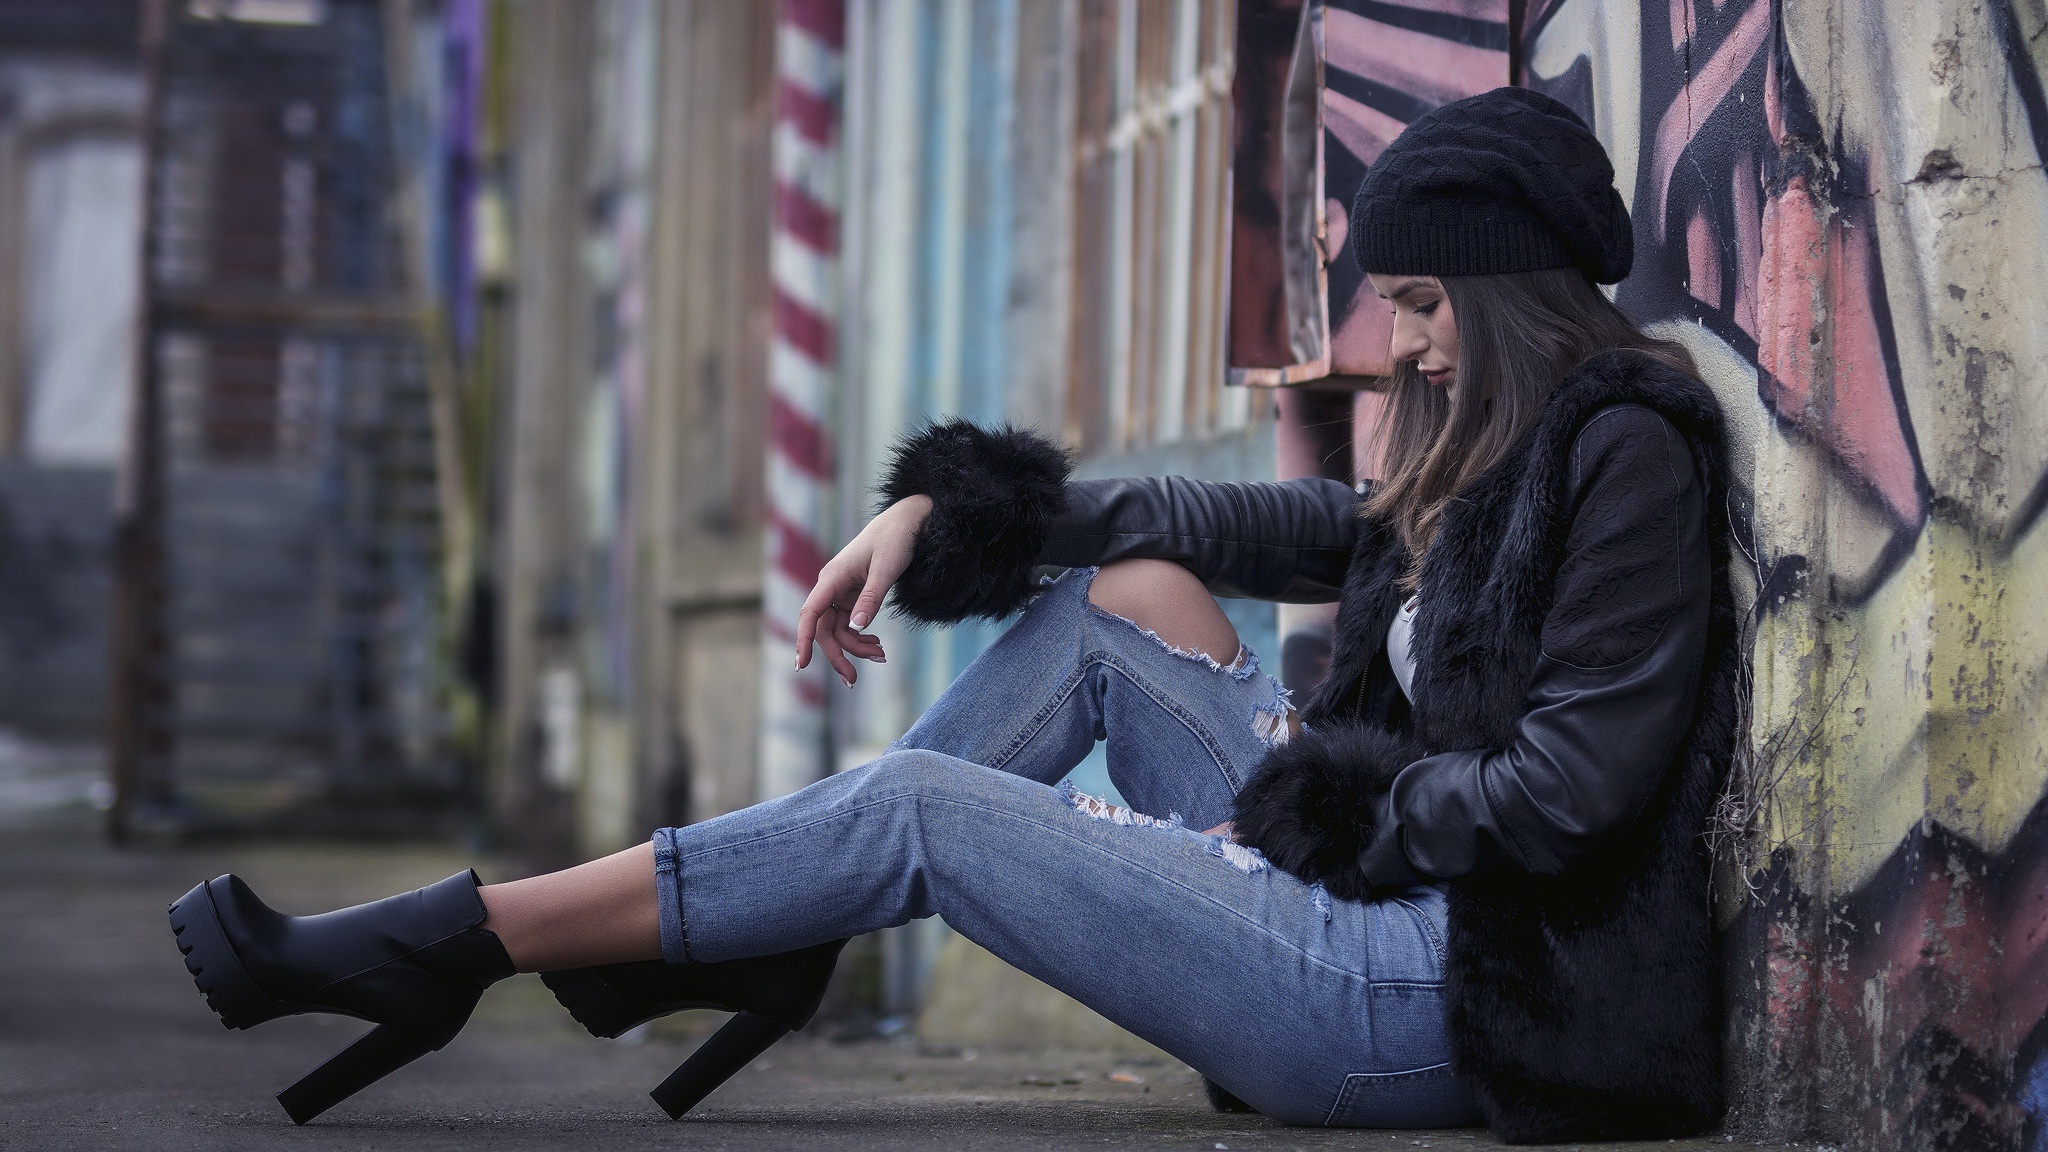 Women Model Torn Jeans Heels Hat Women Outdoors Sitting Urban Women With Hats Jeans Brunette Black C 2048x1152